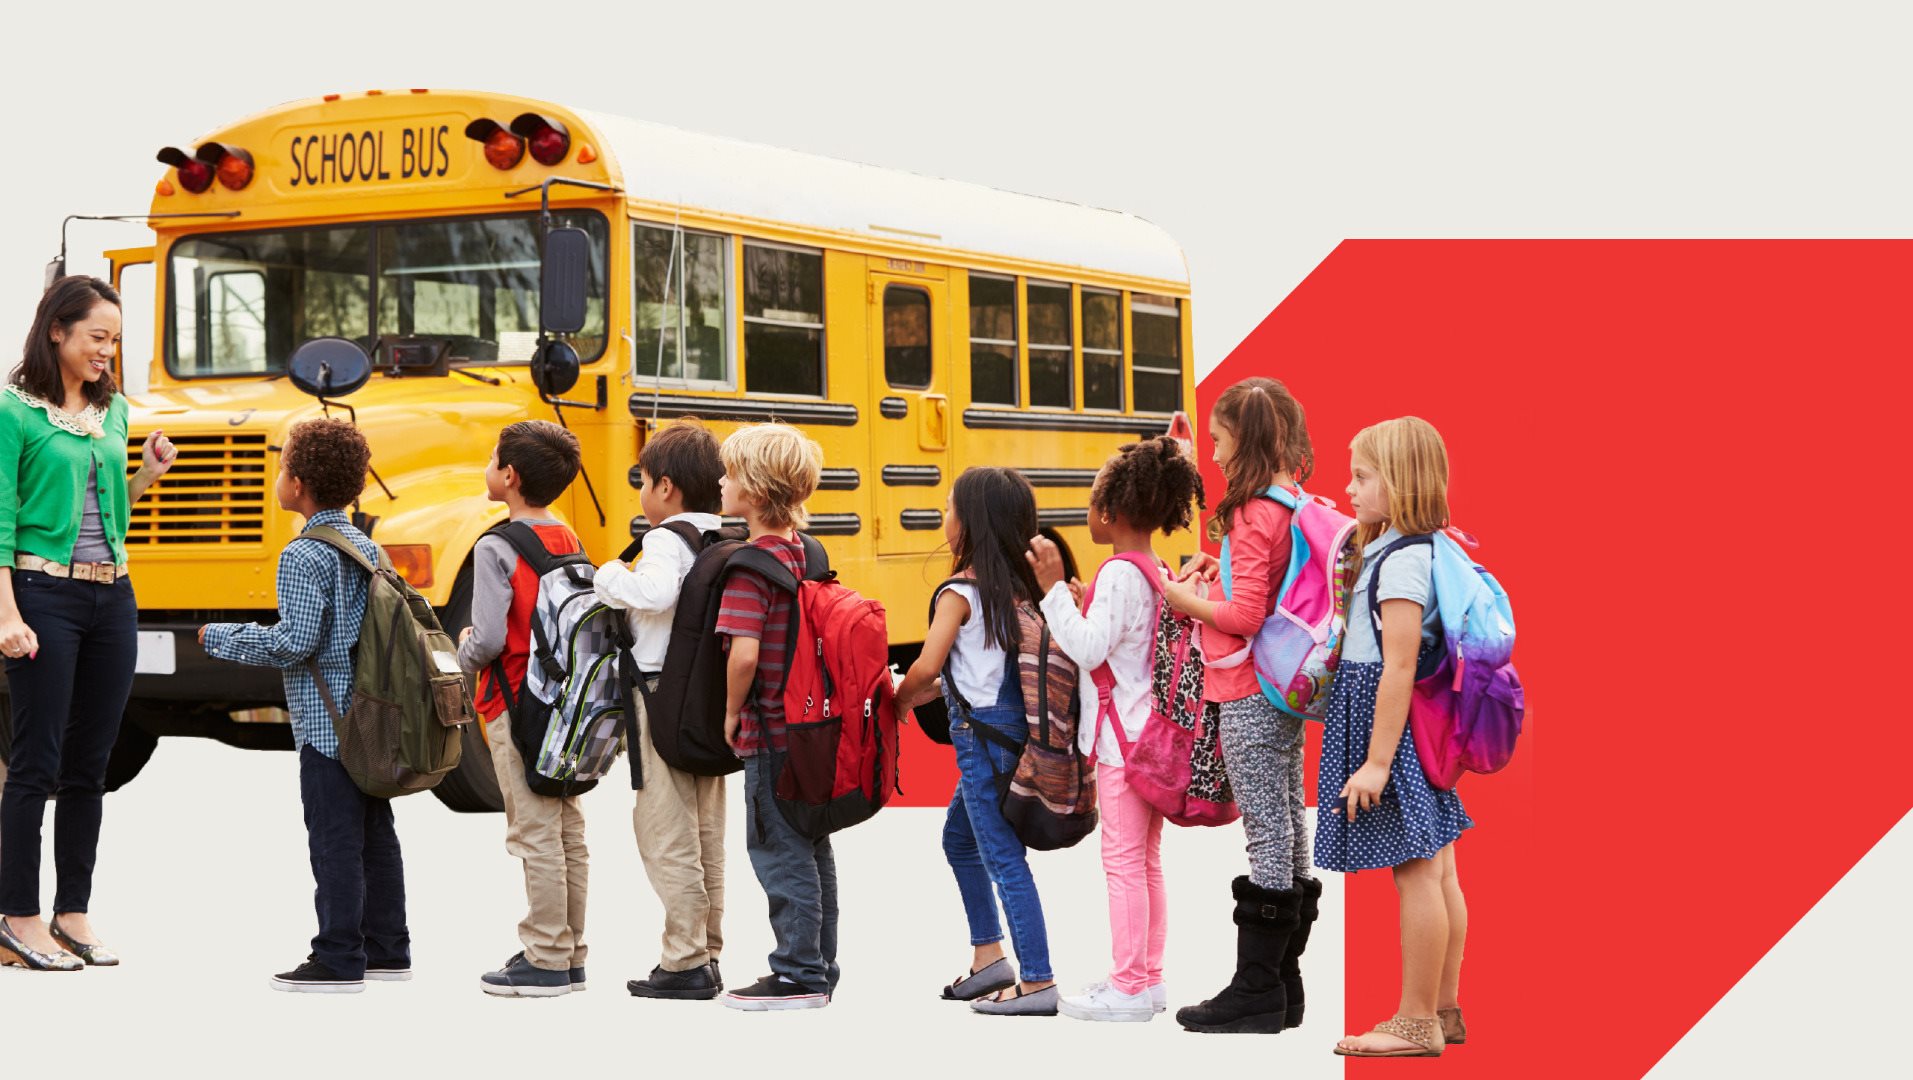 Children in front of a schoolbus